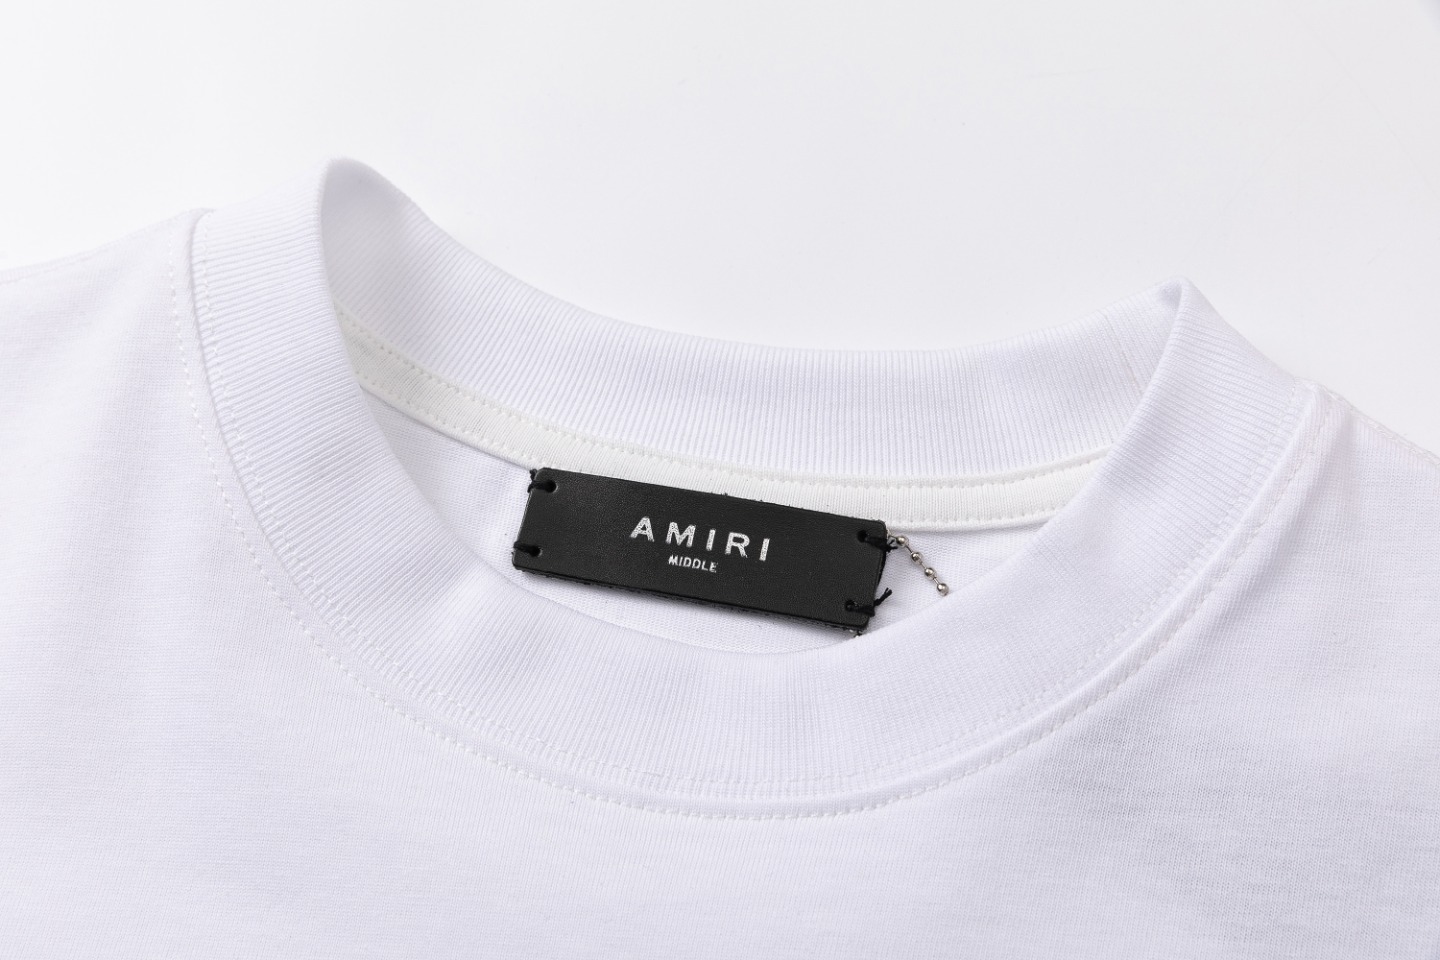 AMIRI 爆買い品質保証 tシャツ 3dモデルスーパーコピー 半袖 柔らかい プリント 純綿 ファッション トップス  2色可選_6